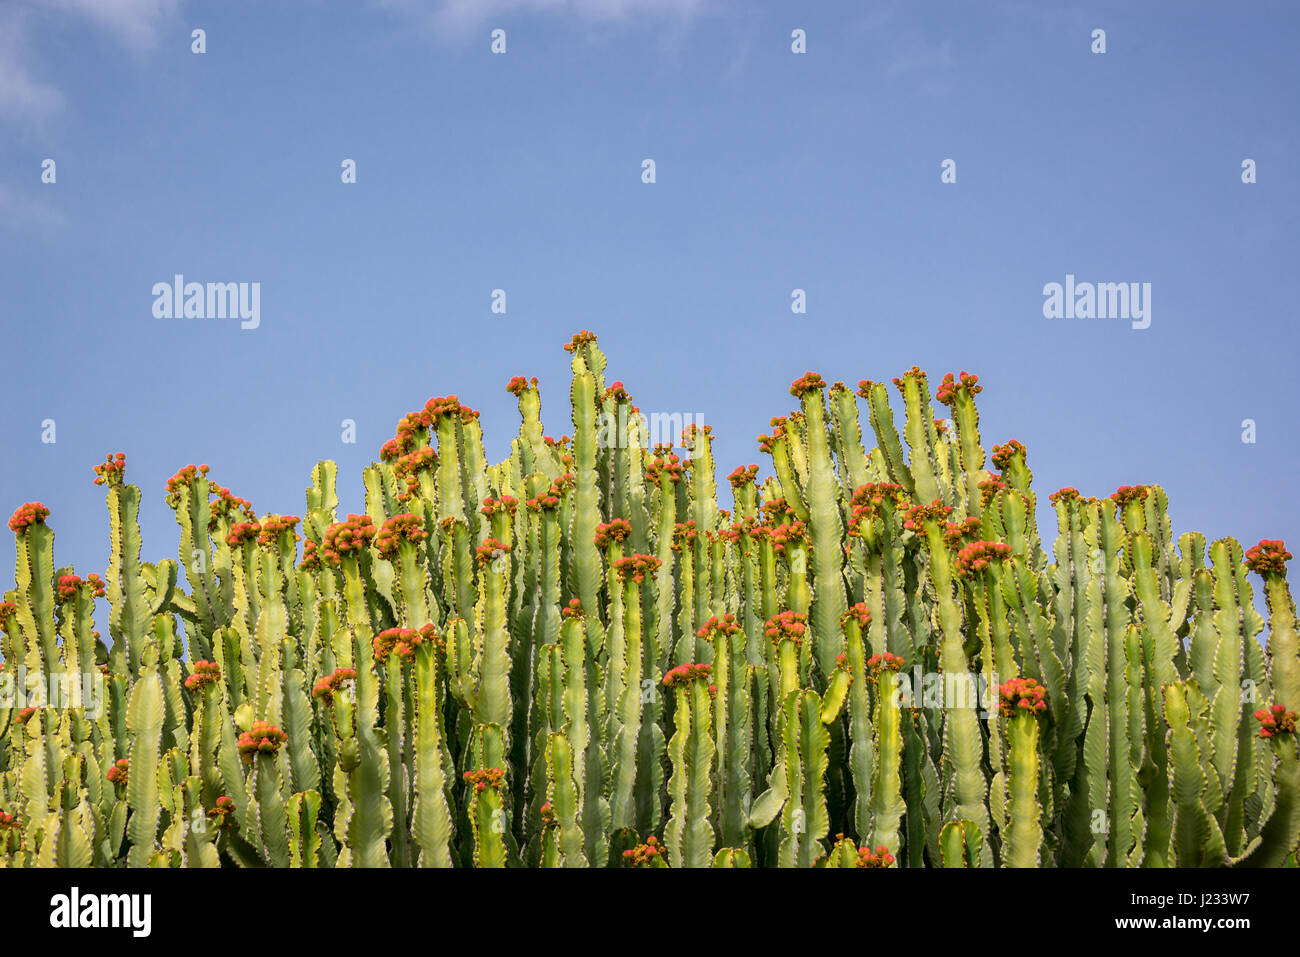 Vista artística abstracta de Euphorbia candelabrum, un gigante de plantas suculentas Foto de stock